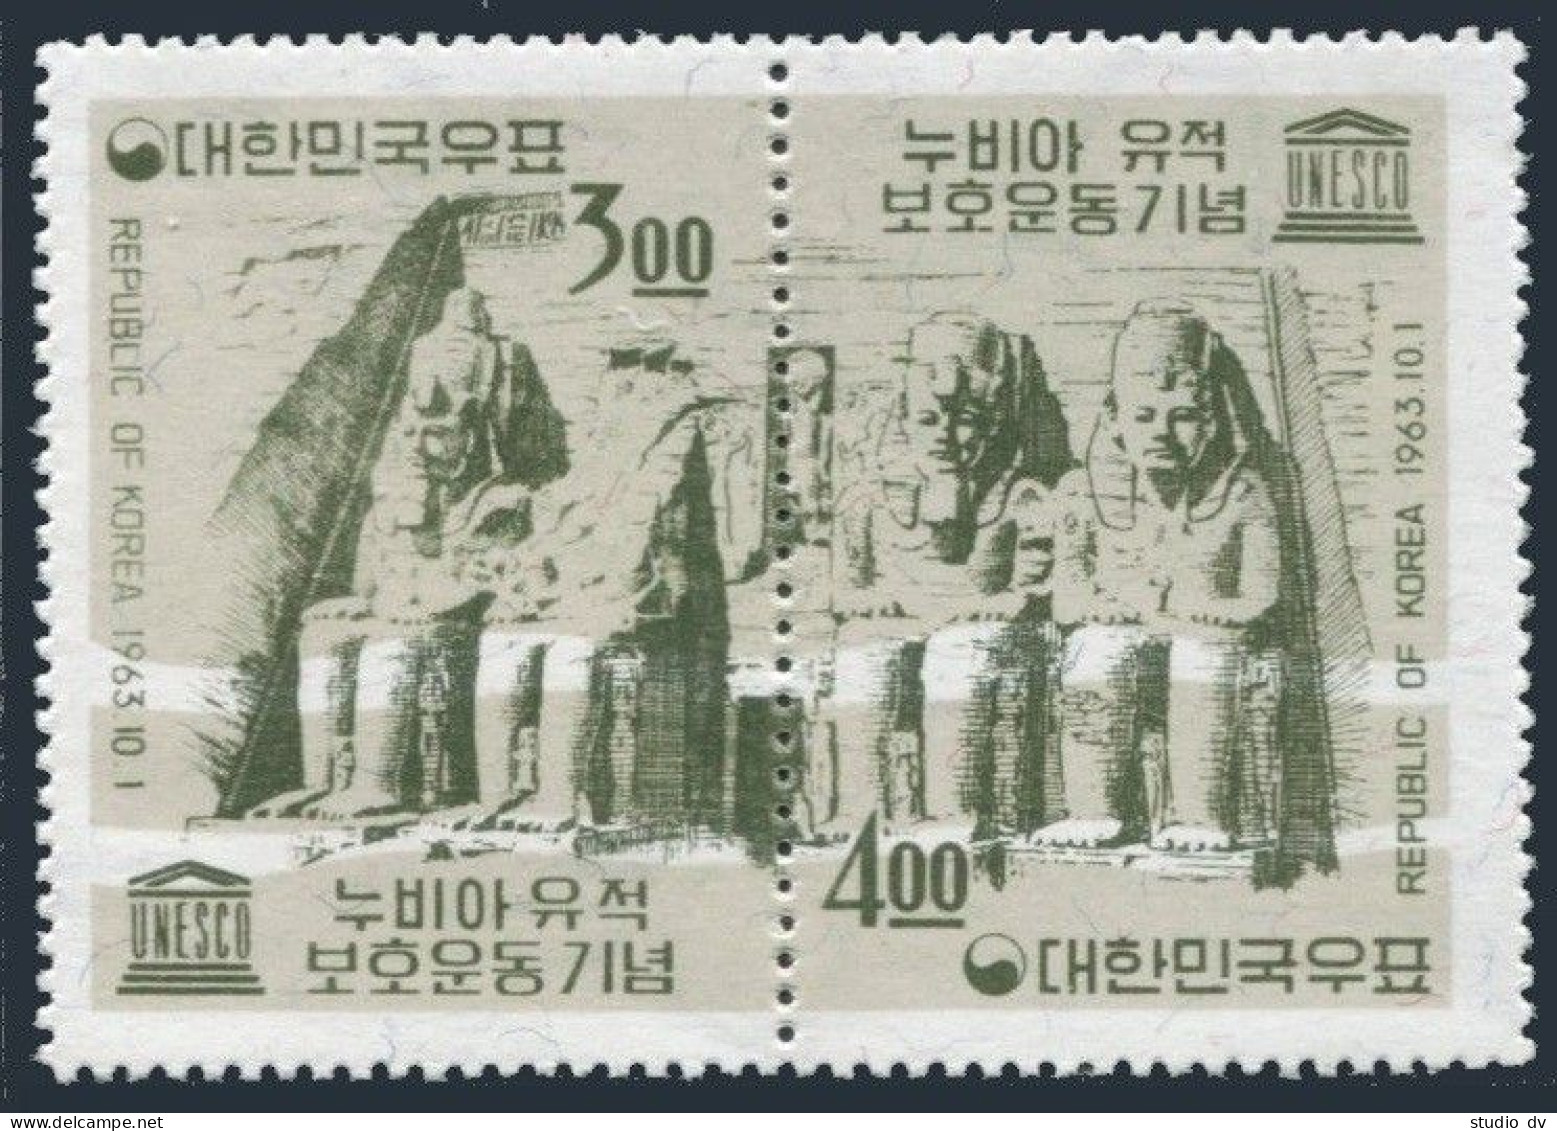 Korea South 410-411b,411a, MNH. Michel 398-399,Bl.182. Save Monuments In Nubia,1963. - Corée Du Sud